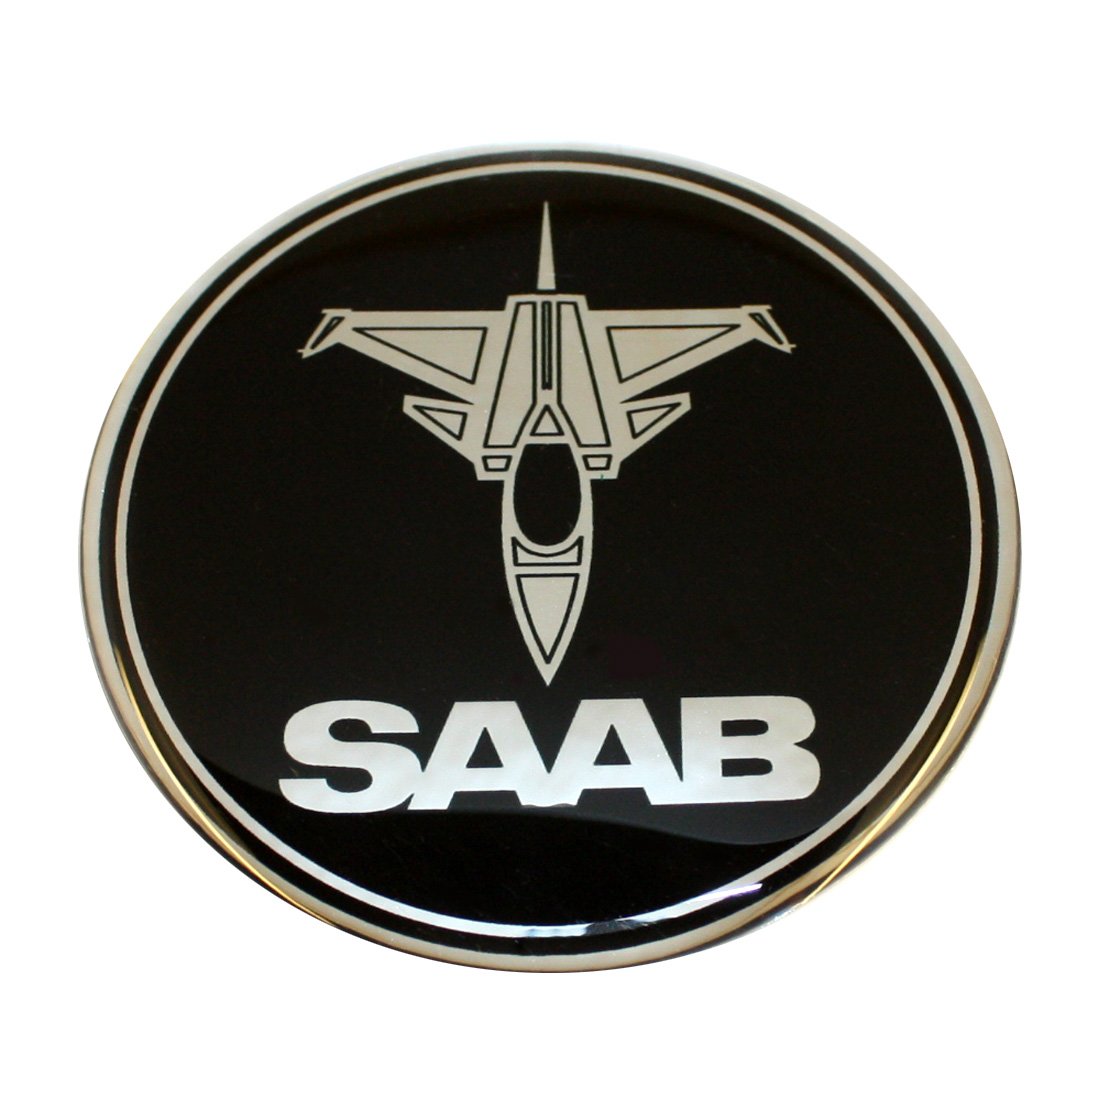 EU-Decals 63,5 mm Jet-Flugzeug SAAB Schwarz Chrom Motorhaube Haube Kofferraum Luke Abzeichen Emblem Gewölbt 3D Aufkleber Selbstklebende Rückseite 9-3 von EU-Decals